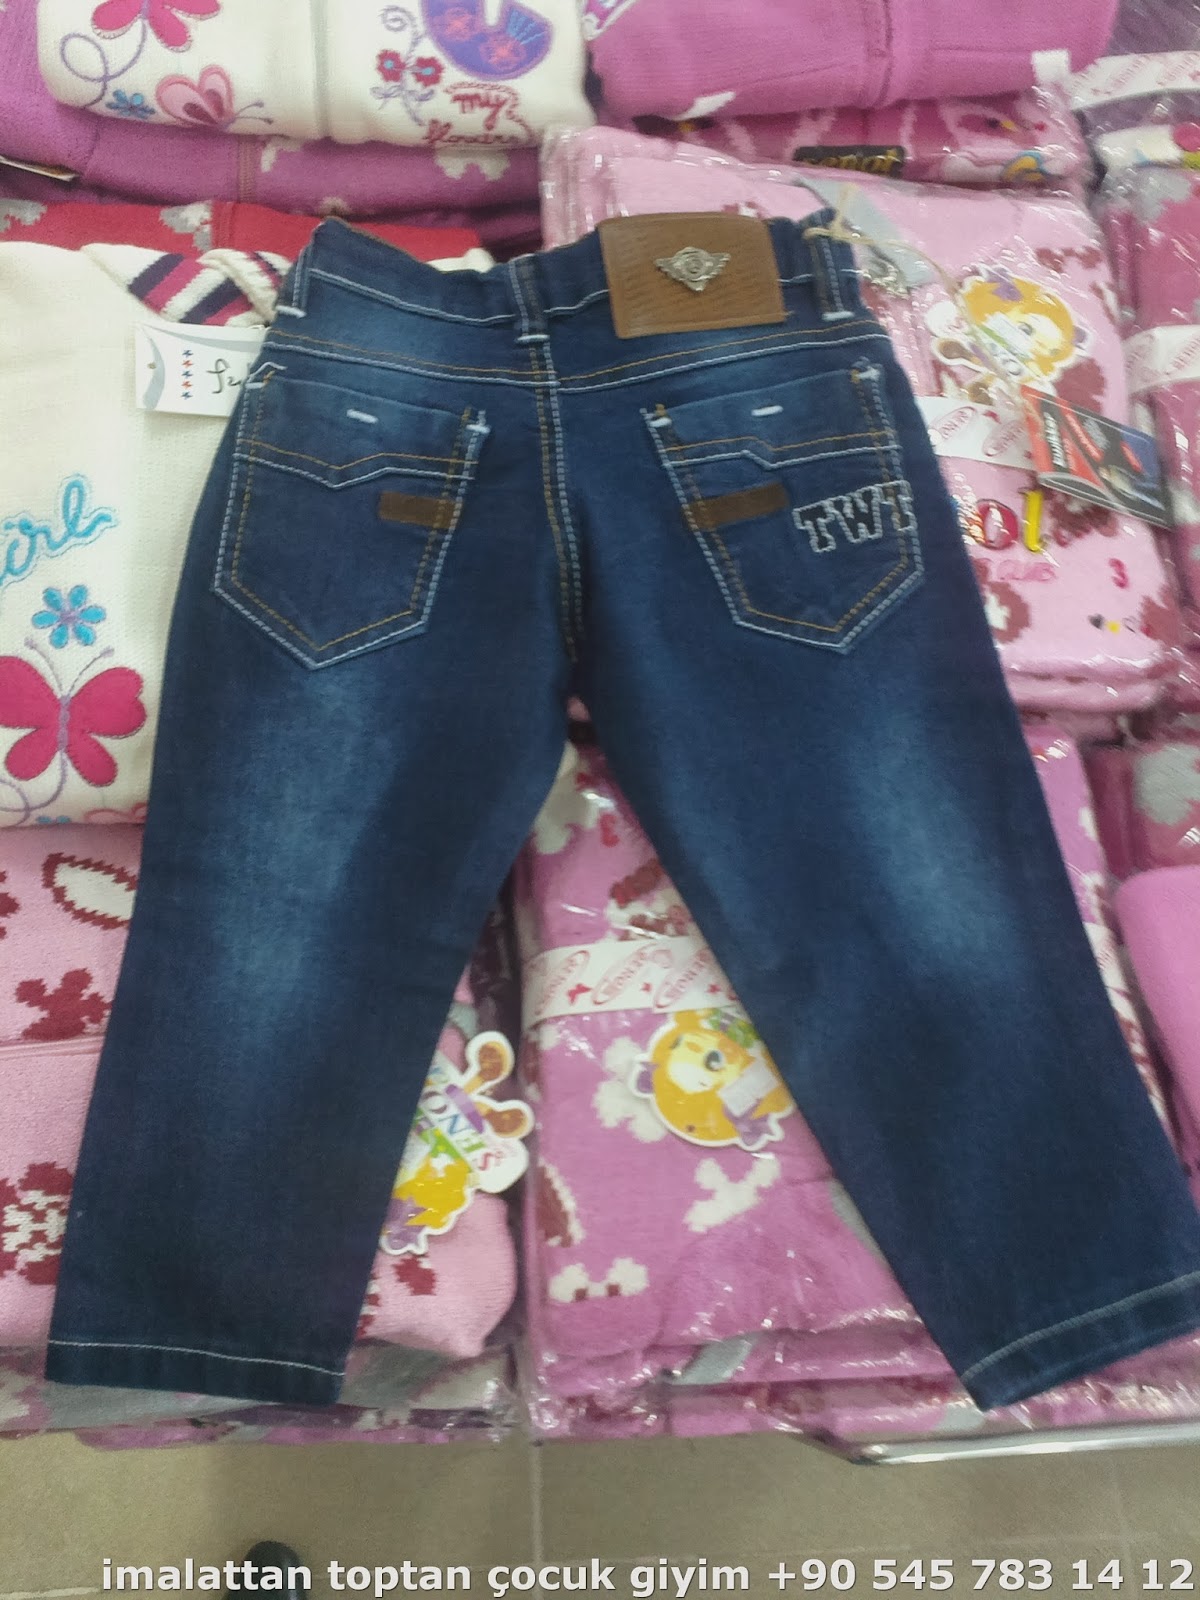 wholesale kids clothes - jeans